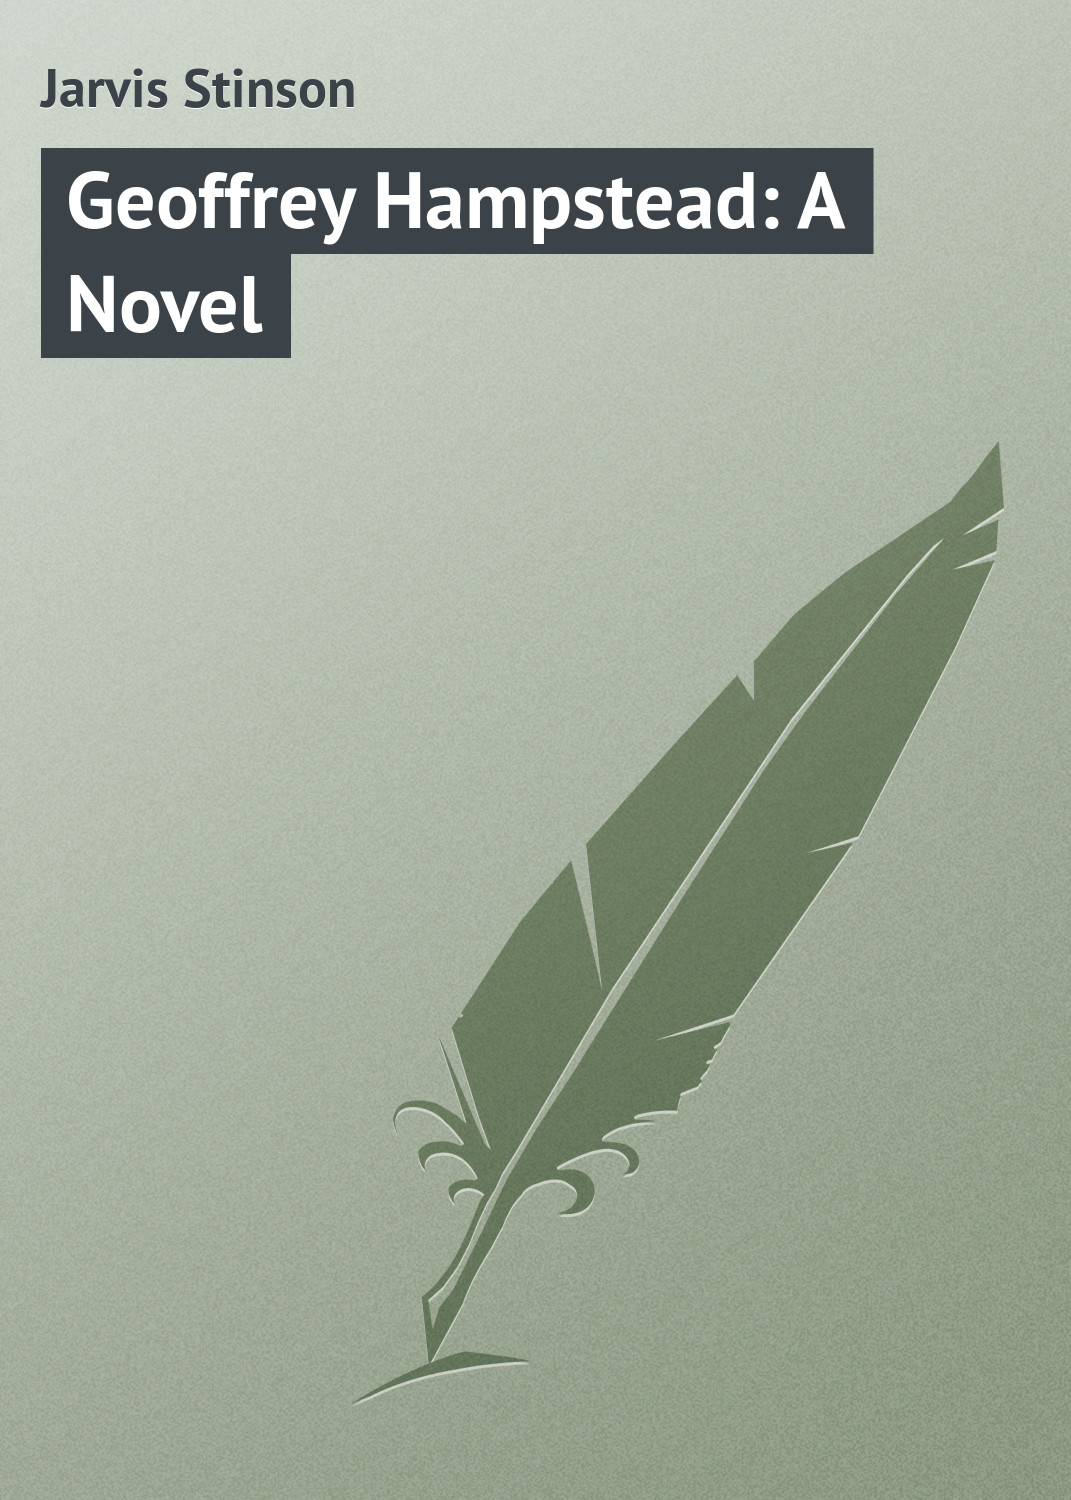 Книга Geoffrey Hampstead: A Novel из серии , созданная Stinson Jarvis, может относится к жанру Классические детективы, Зарубежные детективы, Зарубежная классика. Стоимость электронной книги Geoffrey Hampstead: A Novel с идентификатором 23165963 составляет 5.99 руб.